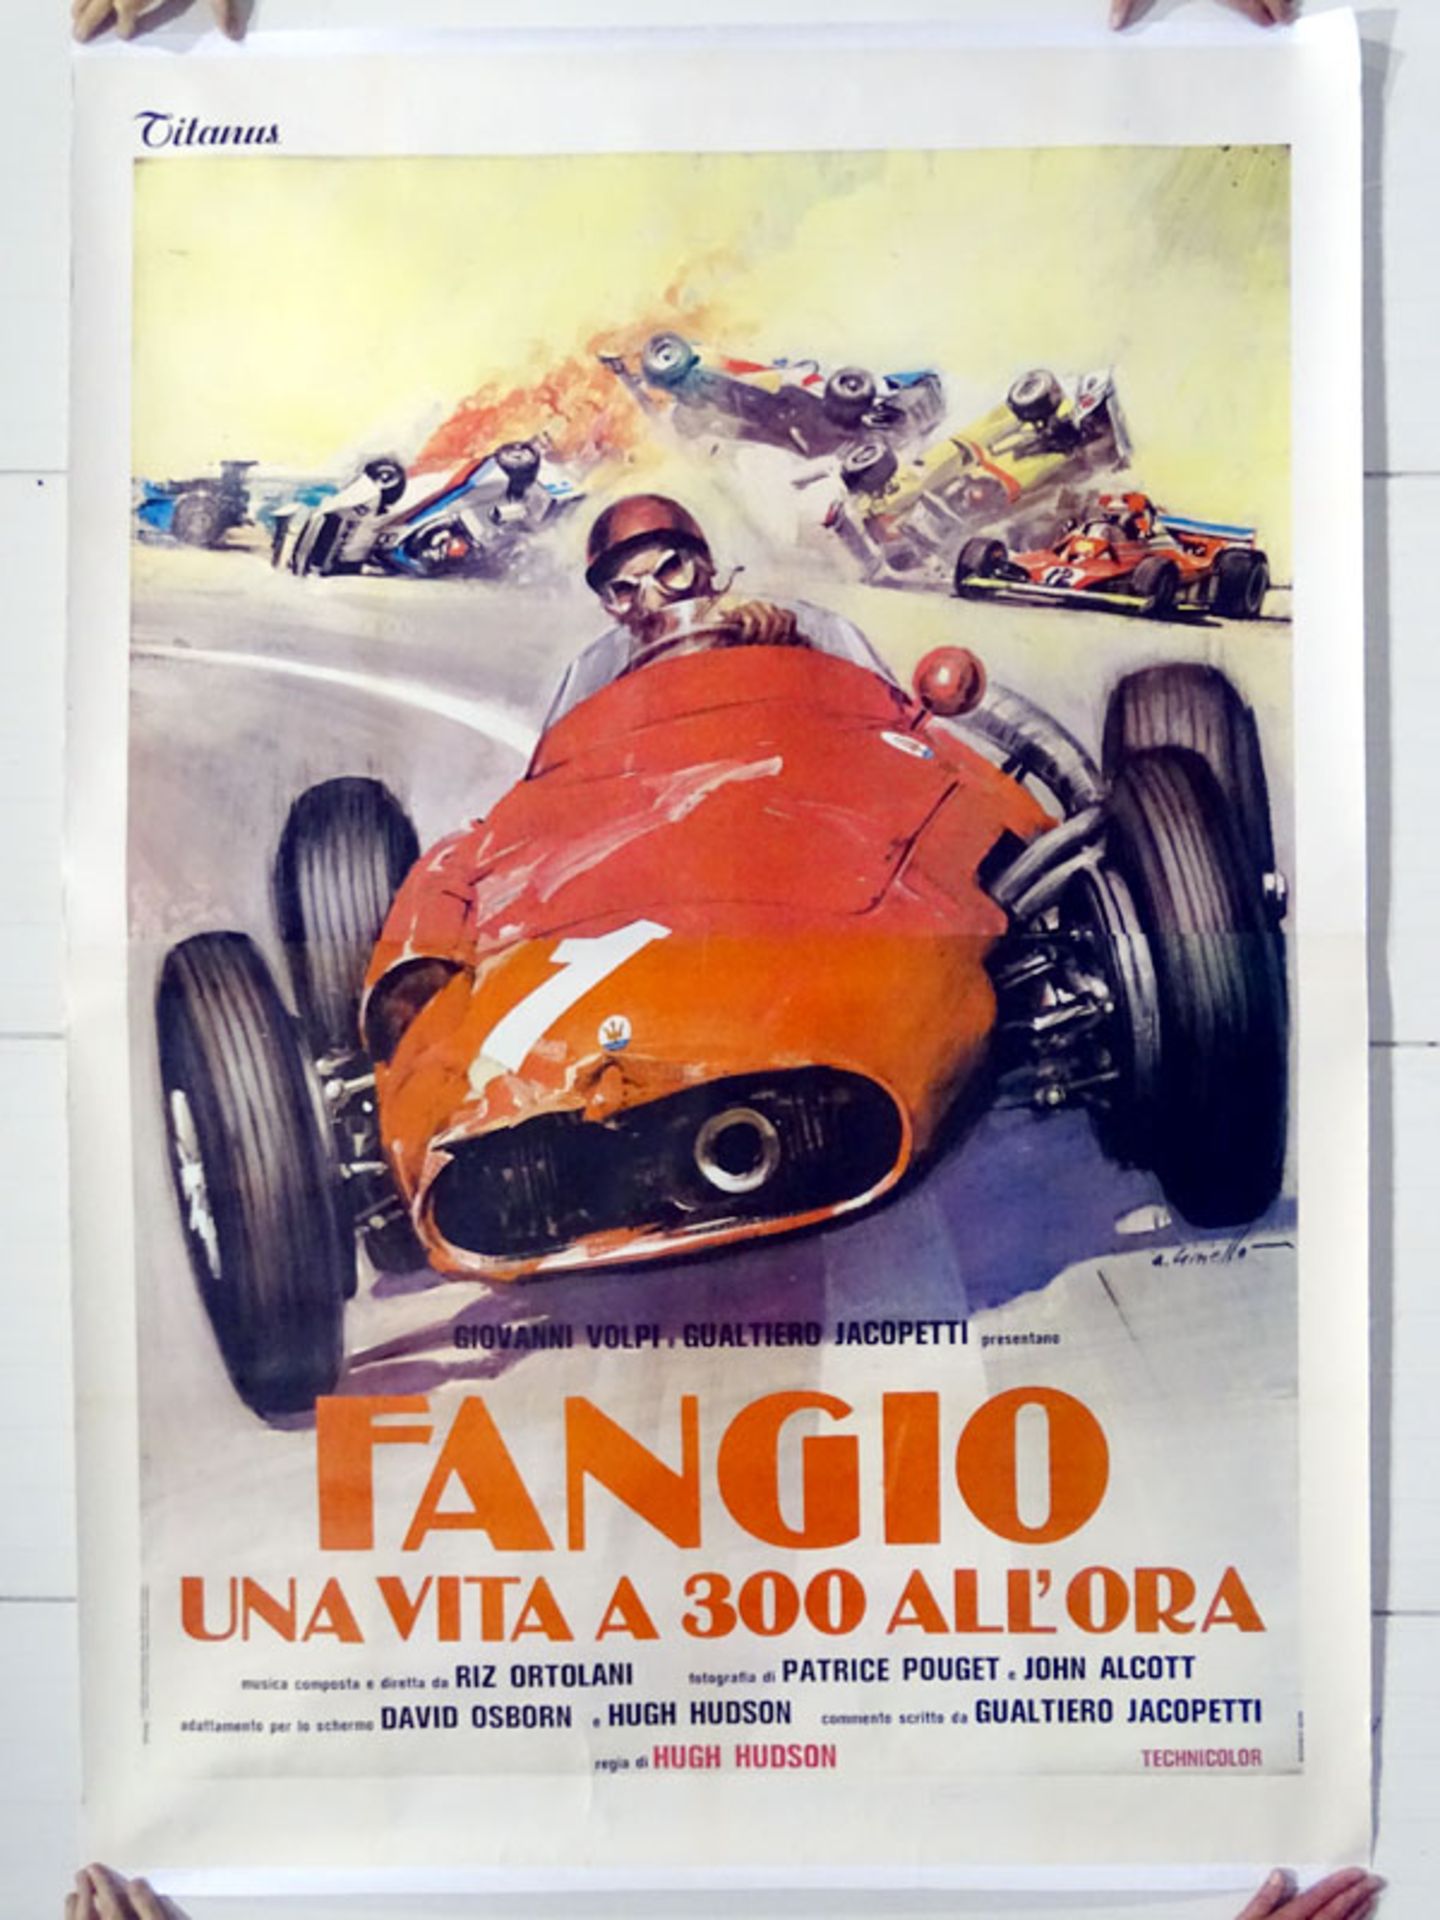 Fangio in the Maserati 250F Movie Poster - Rare 6' x 4' Size